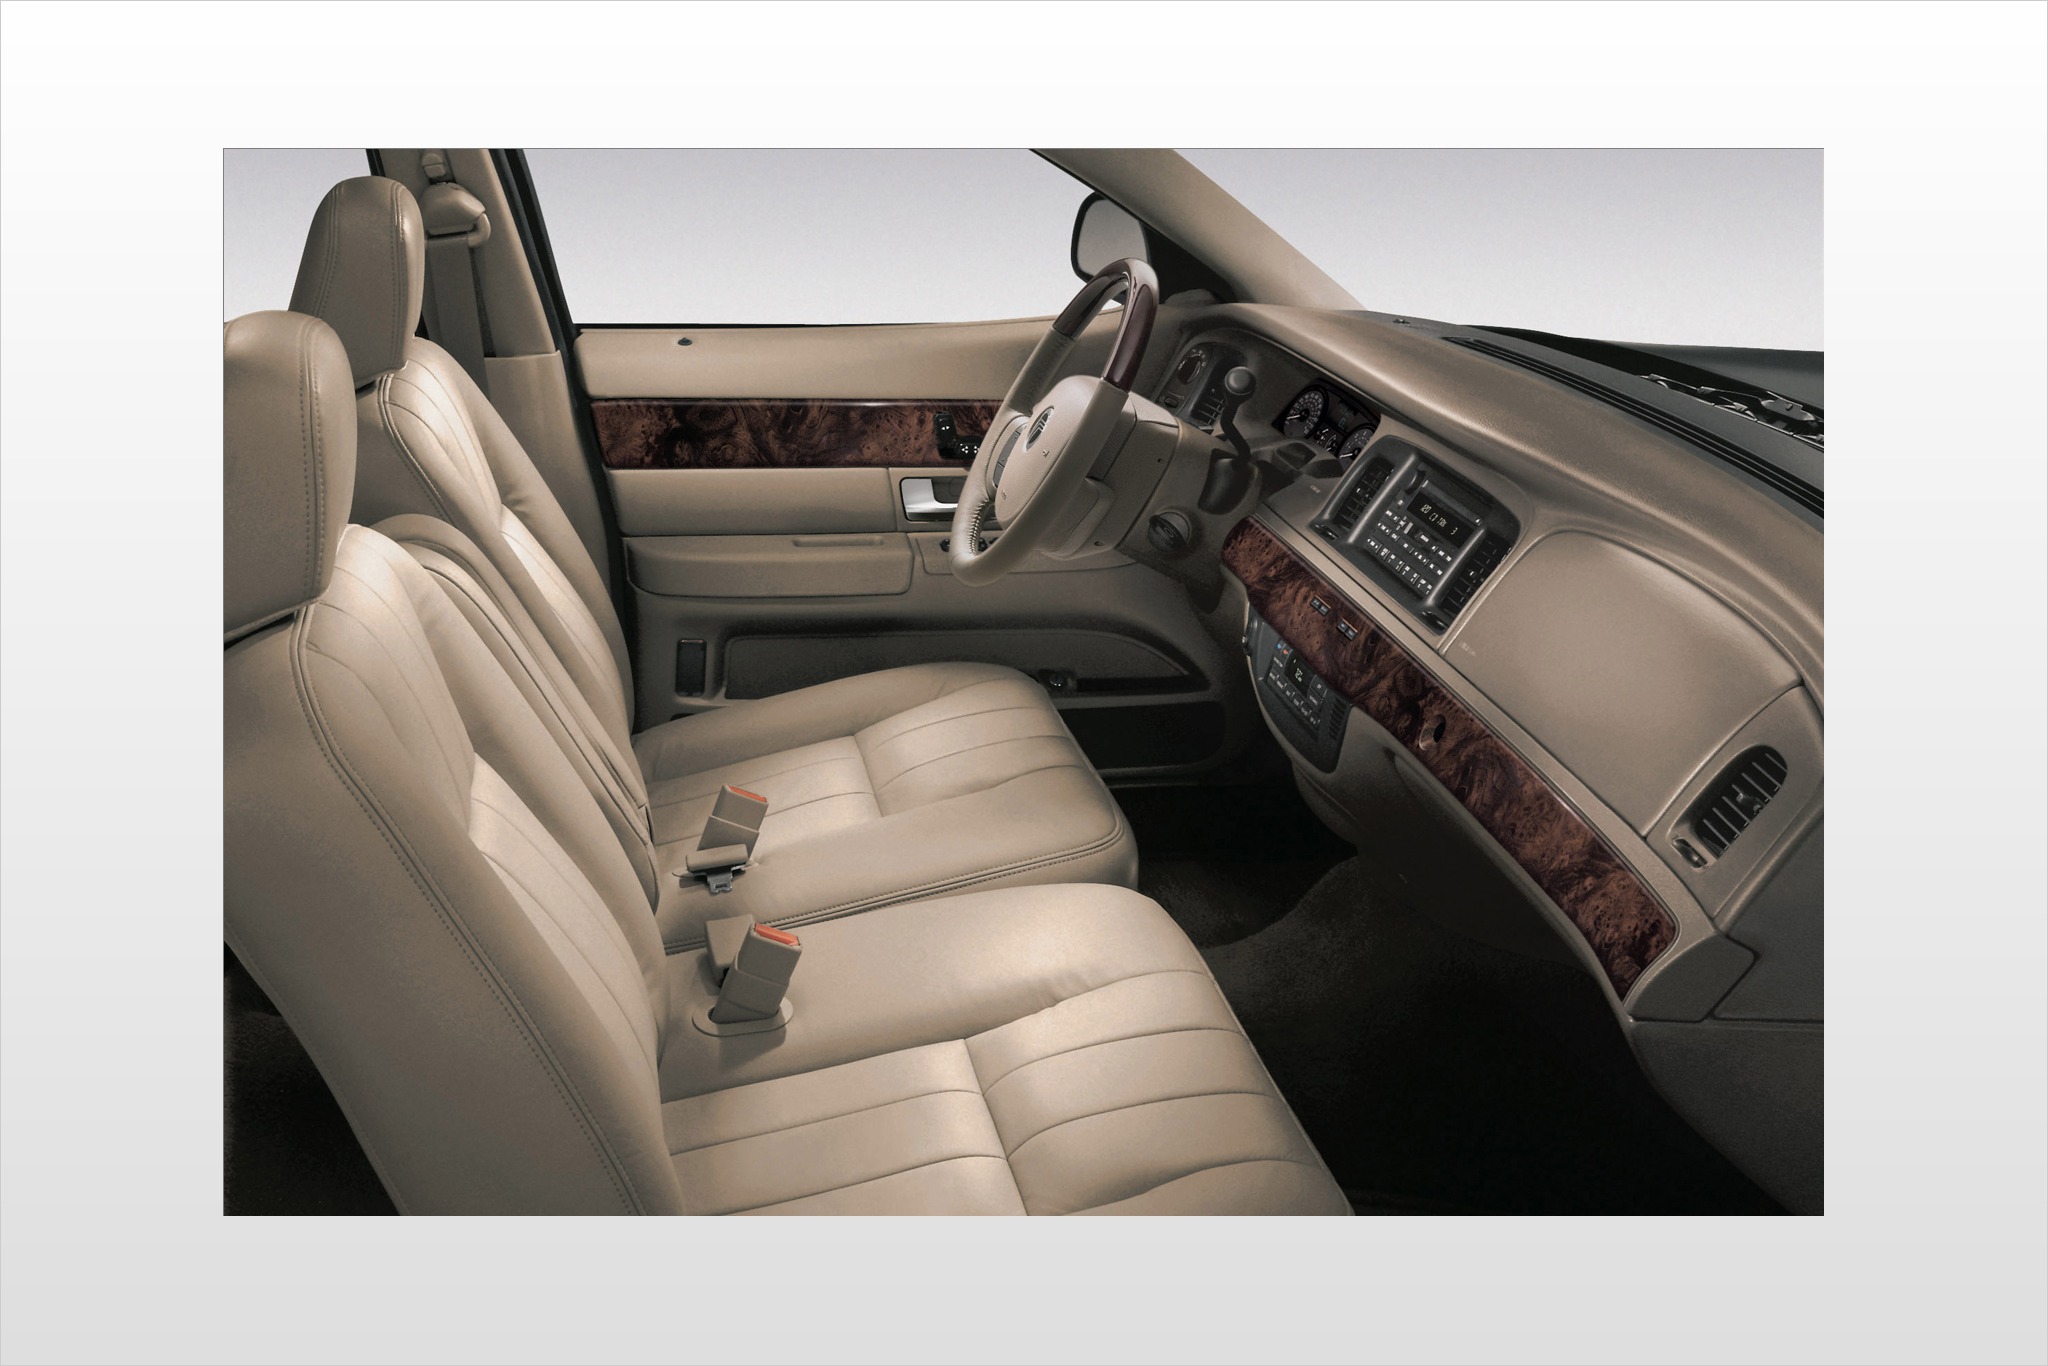 2007 Mercury Grand Marquis LS Sedan Interior